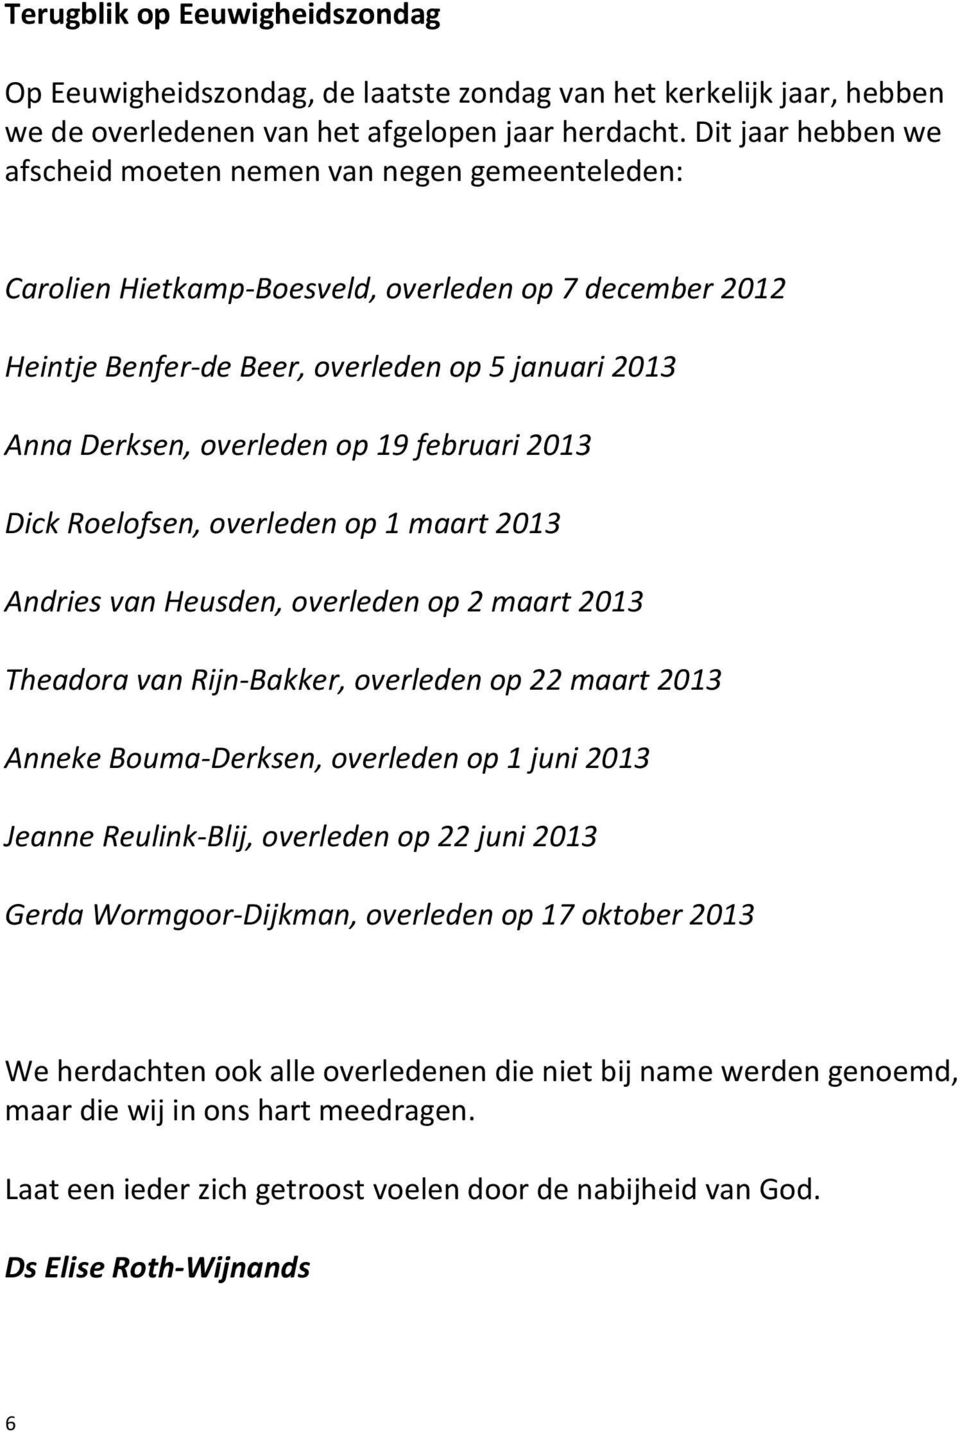 op 19 februari 2013 Dick Roelofsen, overleden op 1 maart 2013 Andries van Heusden, overleden op 2 maart 2013 Theadora van Rijn-Bakker, overleden op 22 maart 2013 Anneke Bouma-Derksen, overleden op 1